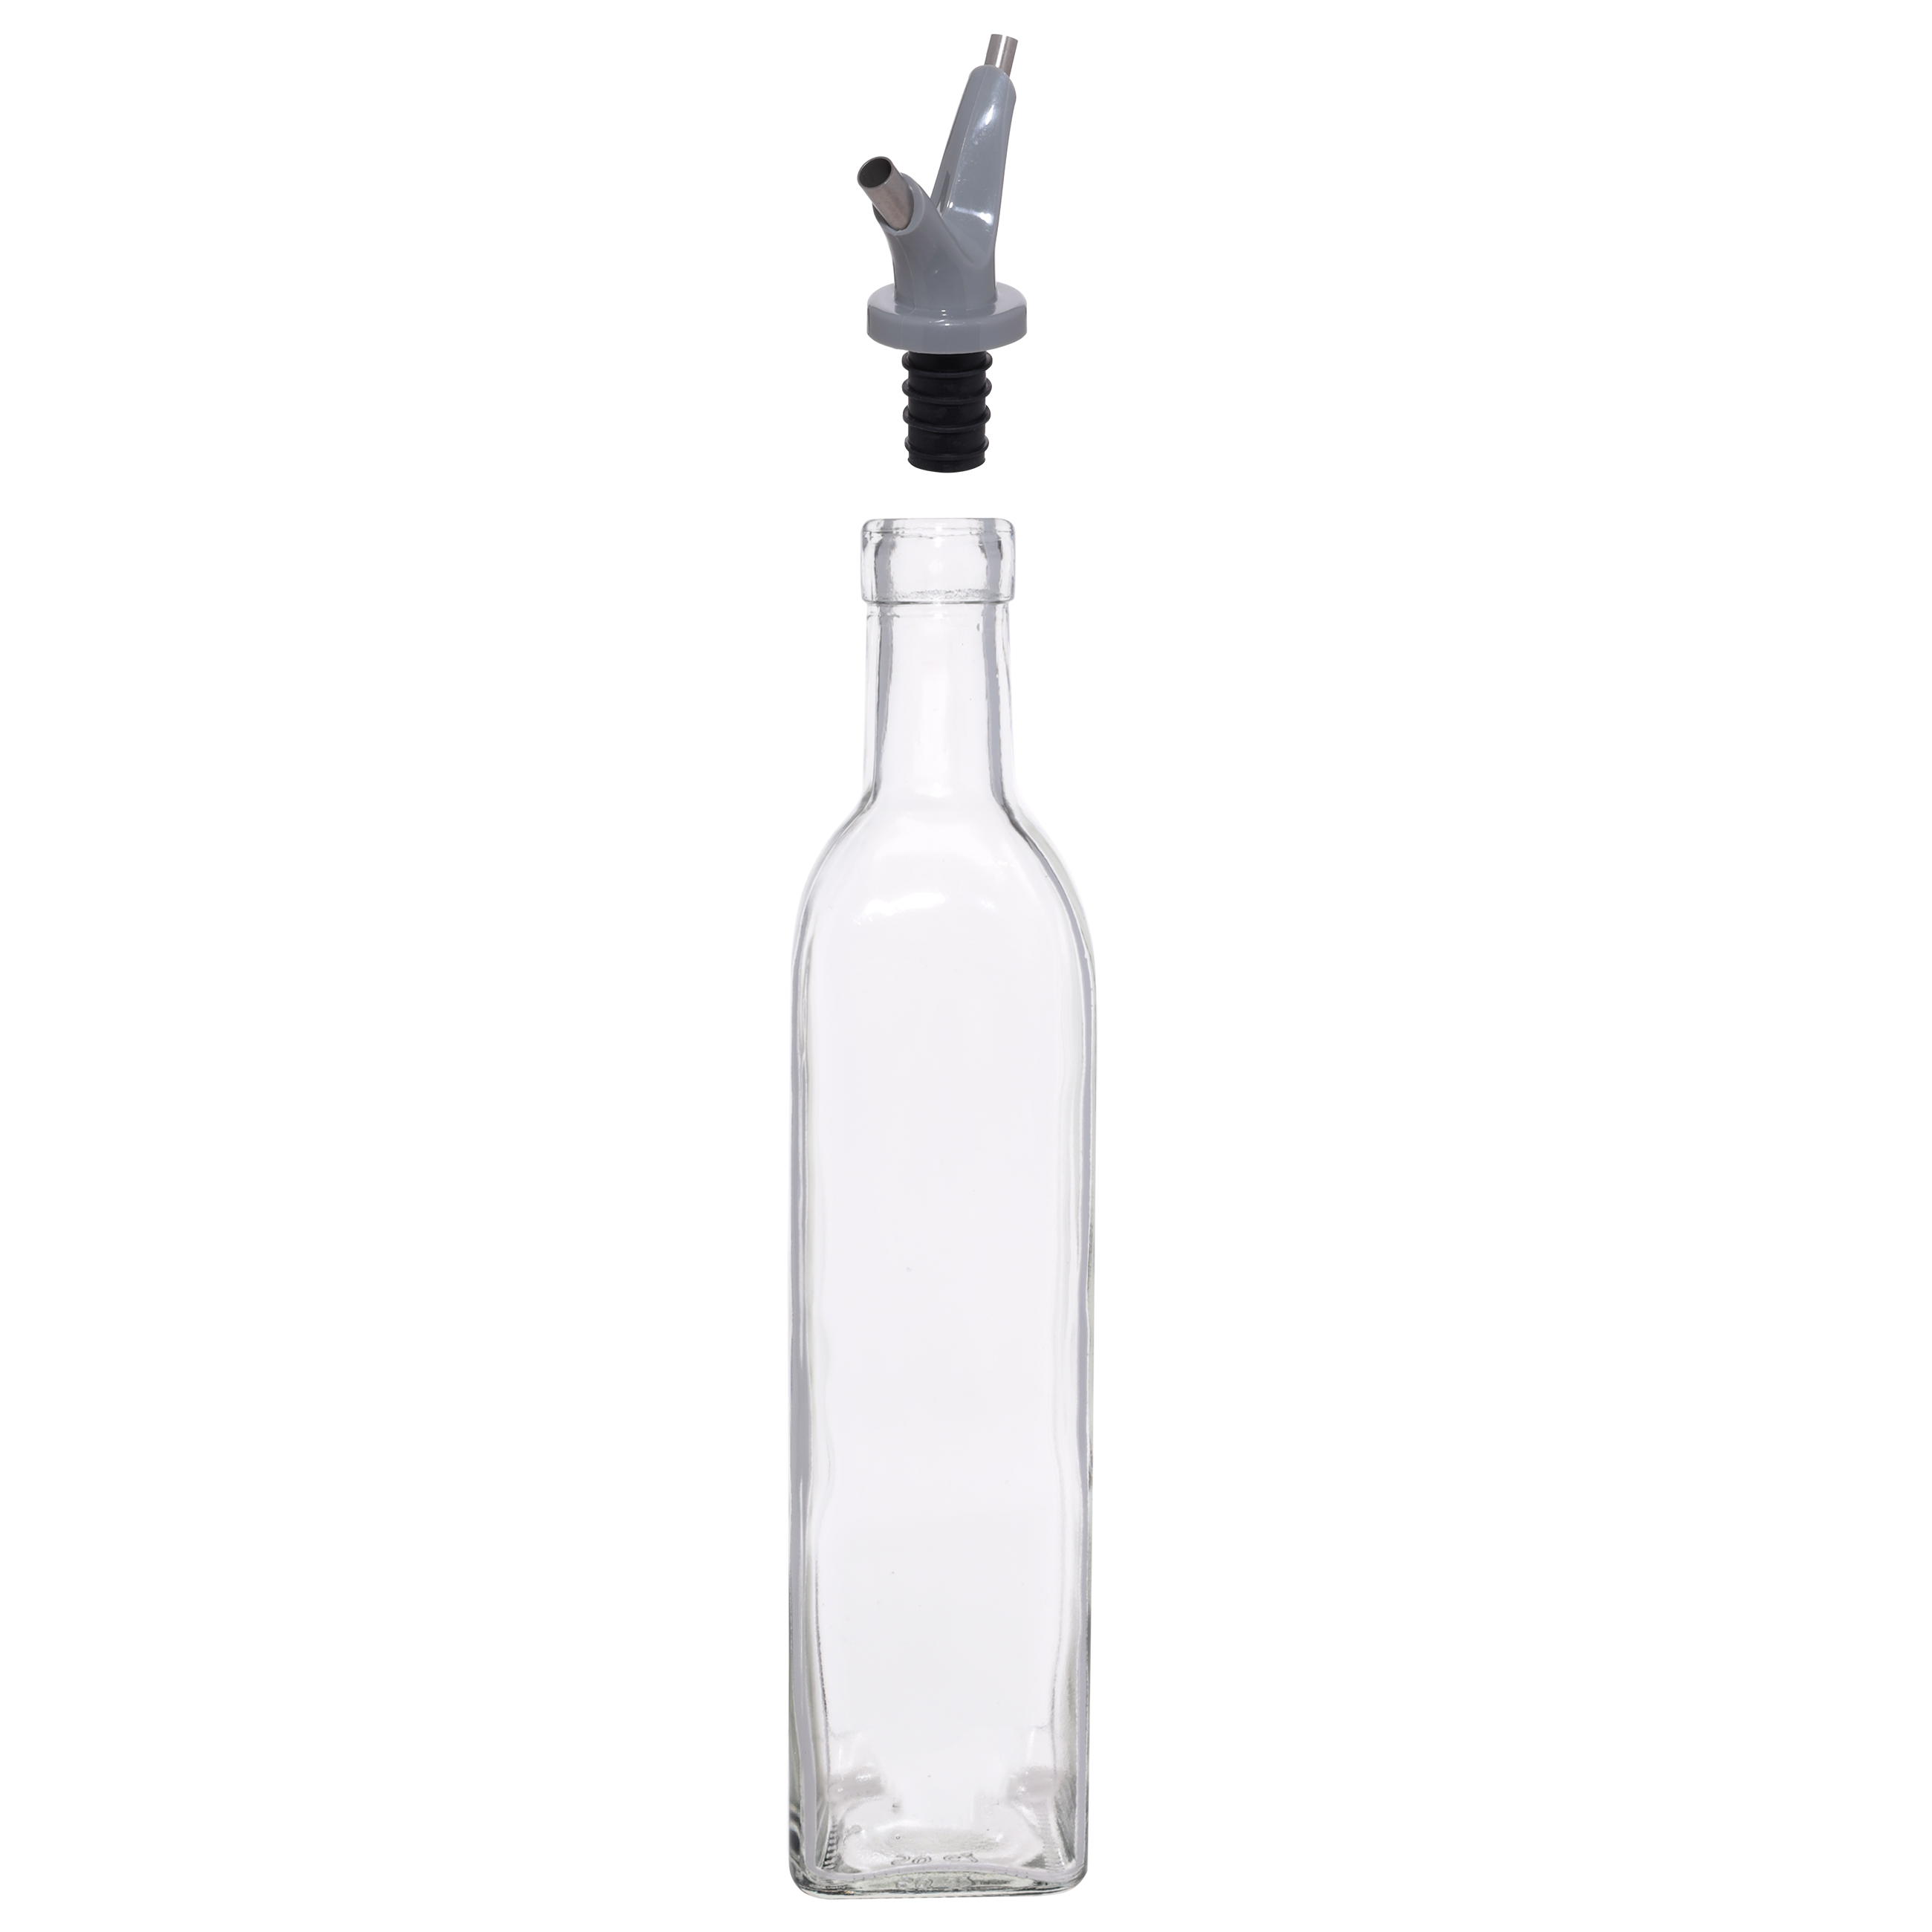 Бутылка для масла или уксуса, 500 мл, с двойным дозатором, стекло/пластик, Assist изображение № 2